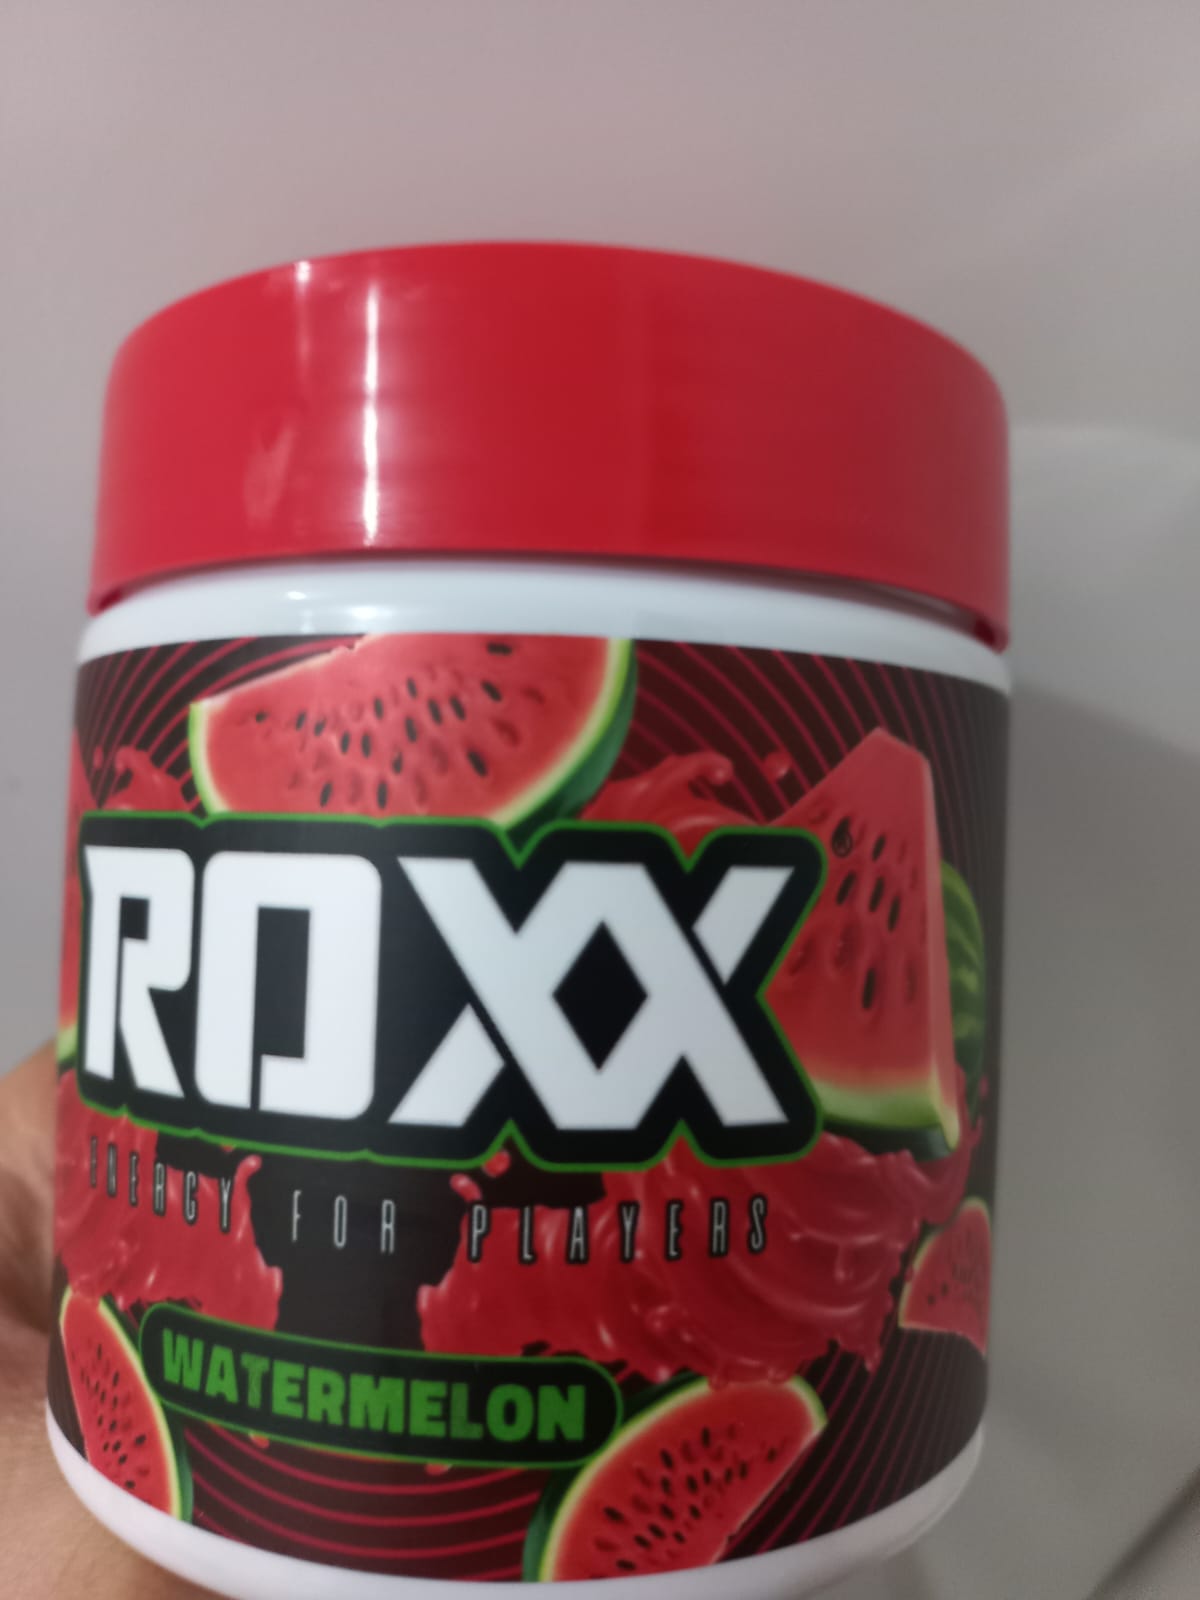 🔥 Bebendo Roxx energy junto com o nss querido e lindíssim